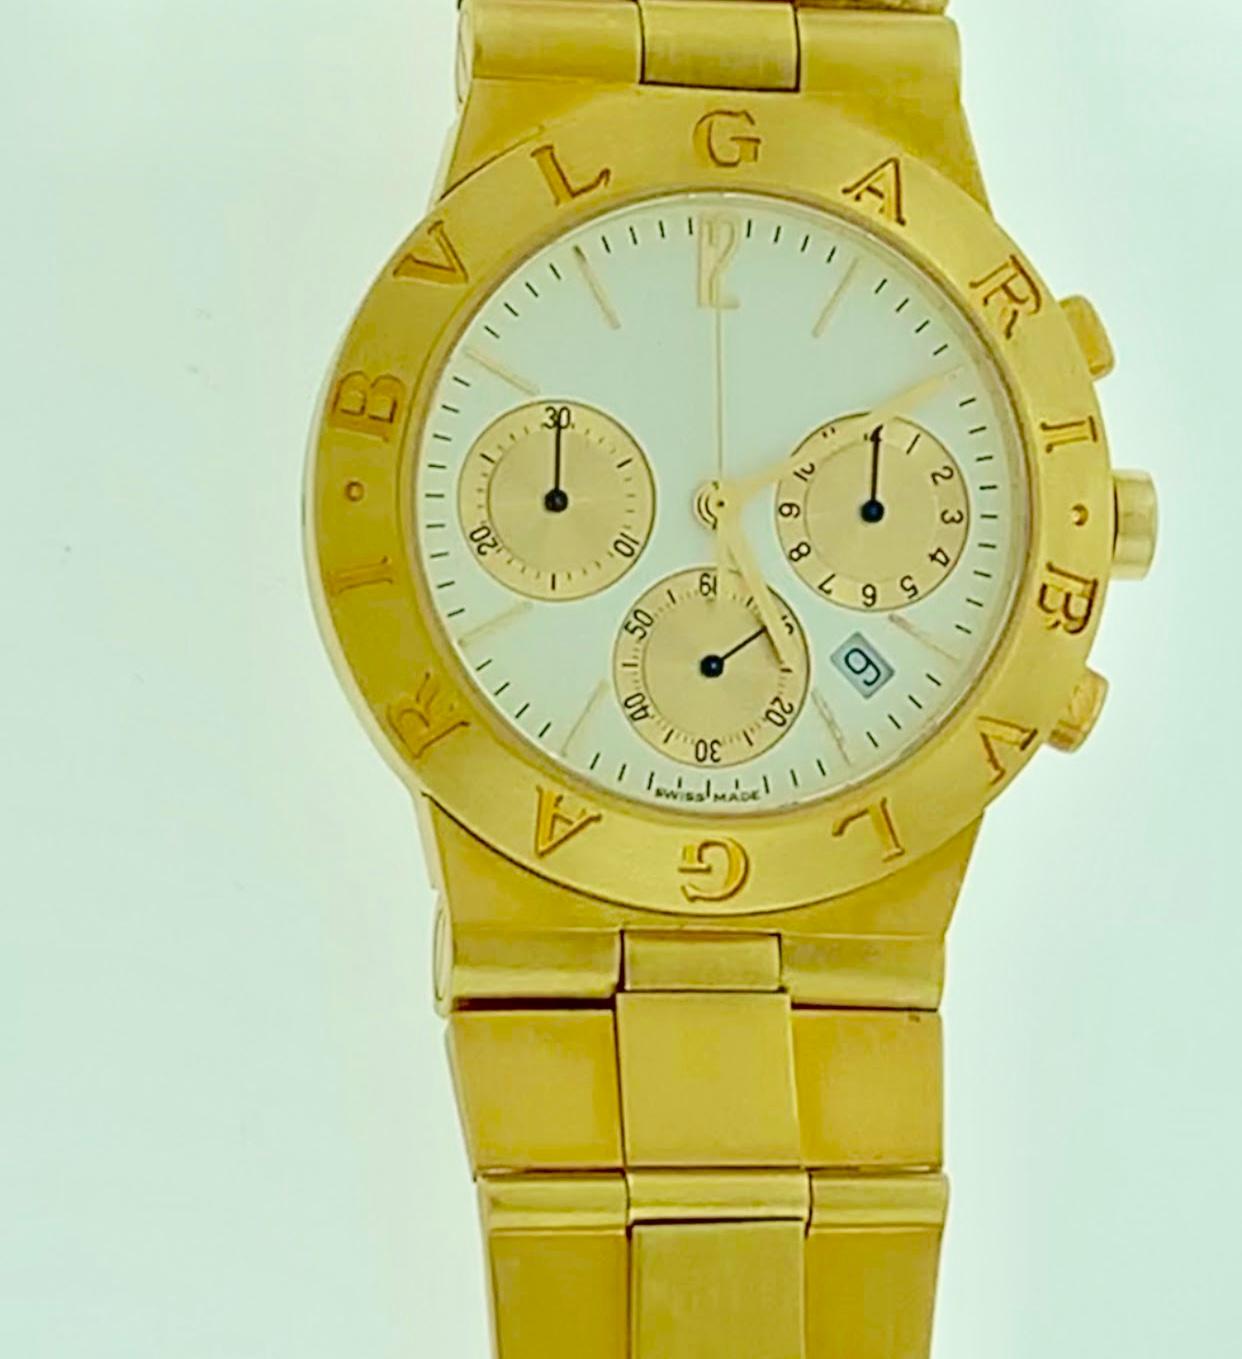 165 Gm 18 Karat Yellow Gold Bvlgari Chrono Watch Unisex Bvlgari Logo Watch 3